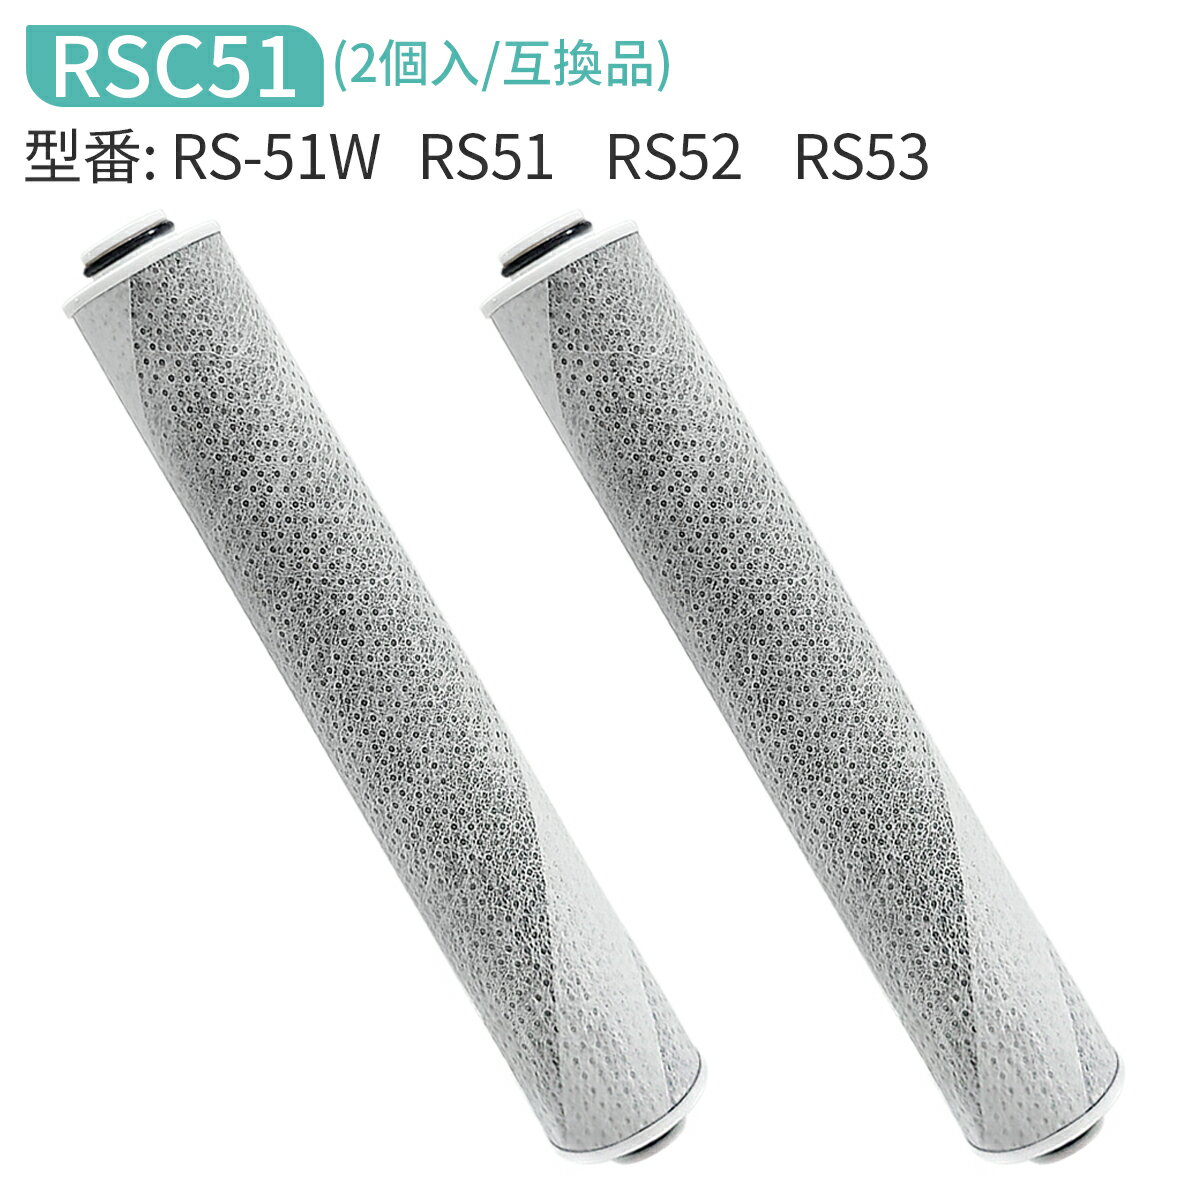 「互換品」rsc51-2 浄水シャワー カートリッジ 浄水シャワーヘッド rs53 rs52 rs51 交換用カートリッジ..